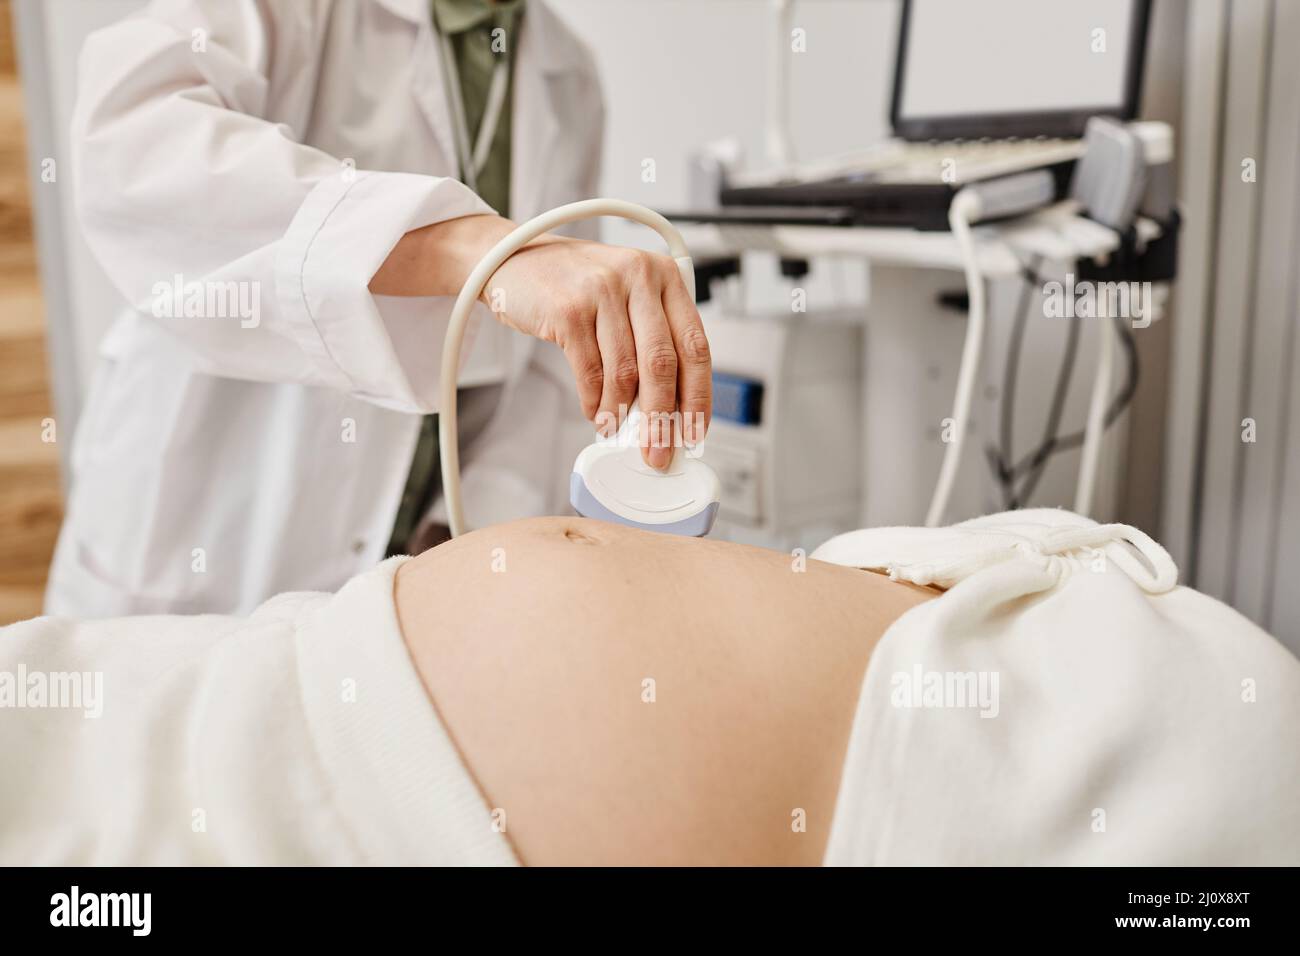 Primo piano dell'esame ecografico di una donna incinta con particolare attenzione al medico che tiene il trasduttore alla pancia, spazio di copia Foto Stock